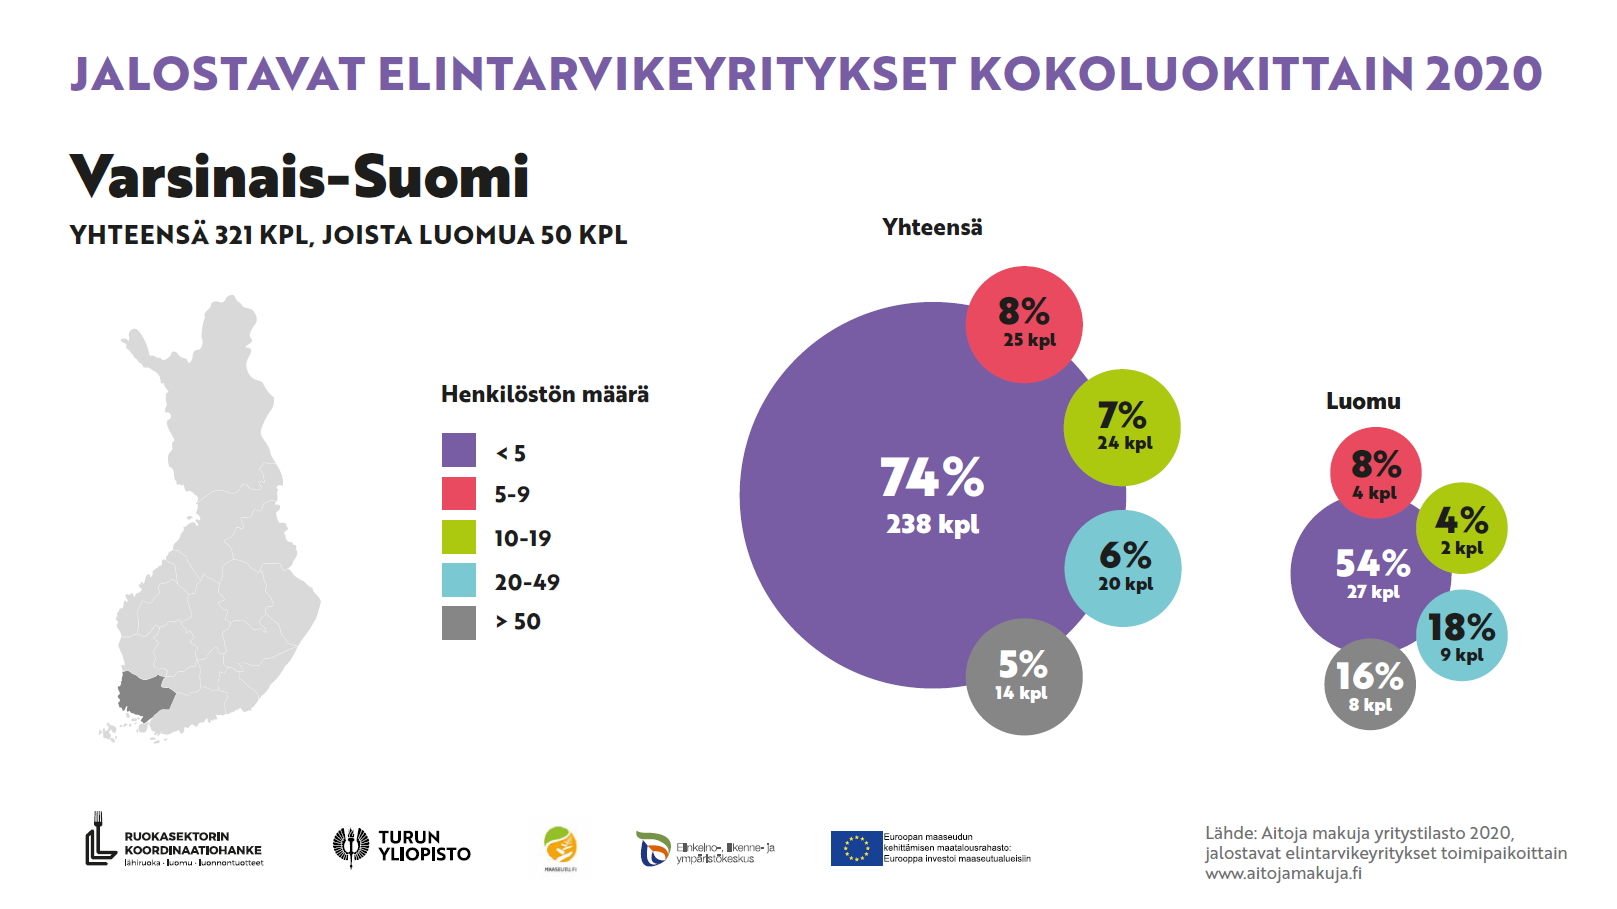 Varsinais-Suomen jalostavat elintarvikeyritykset kokoluokittain 2020